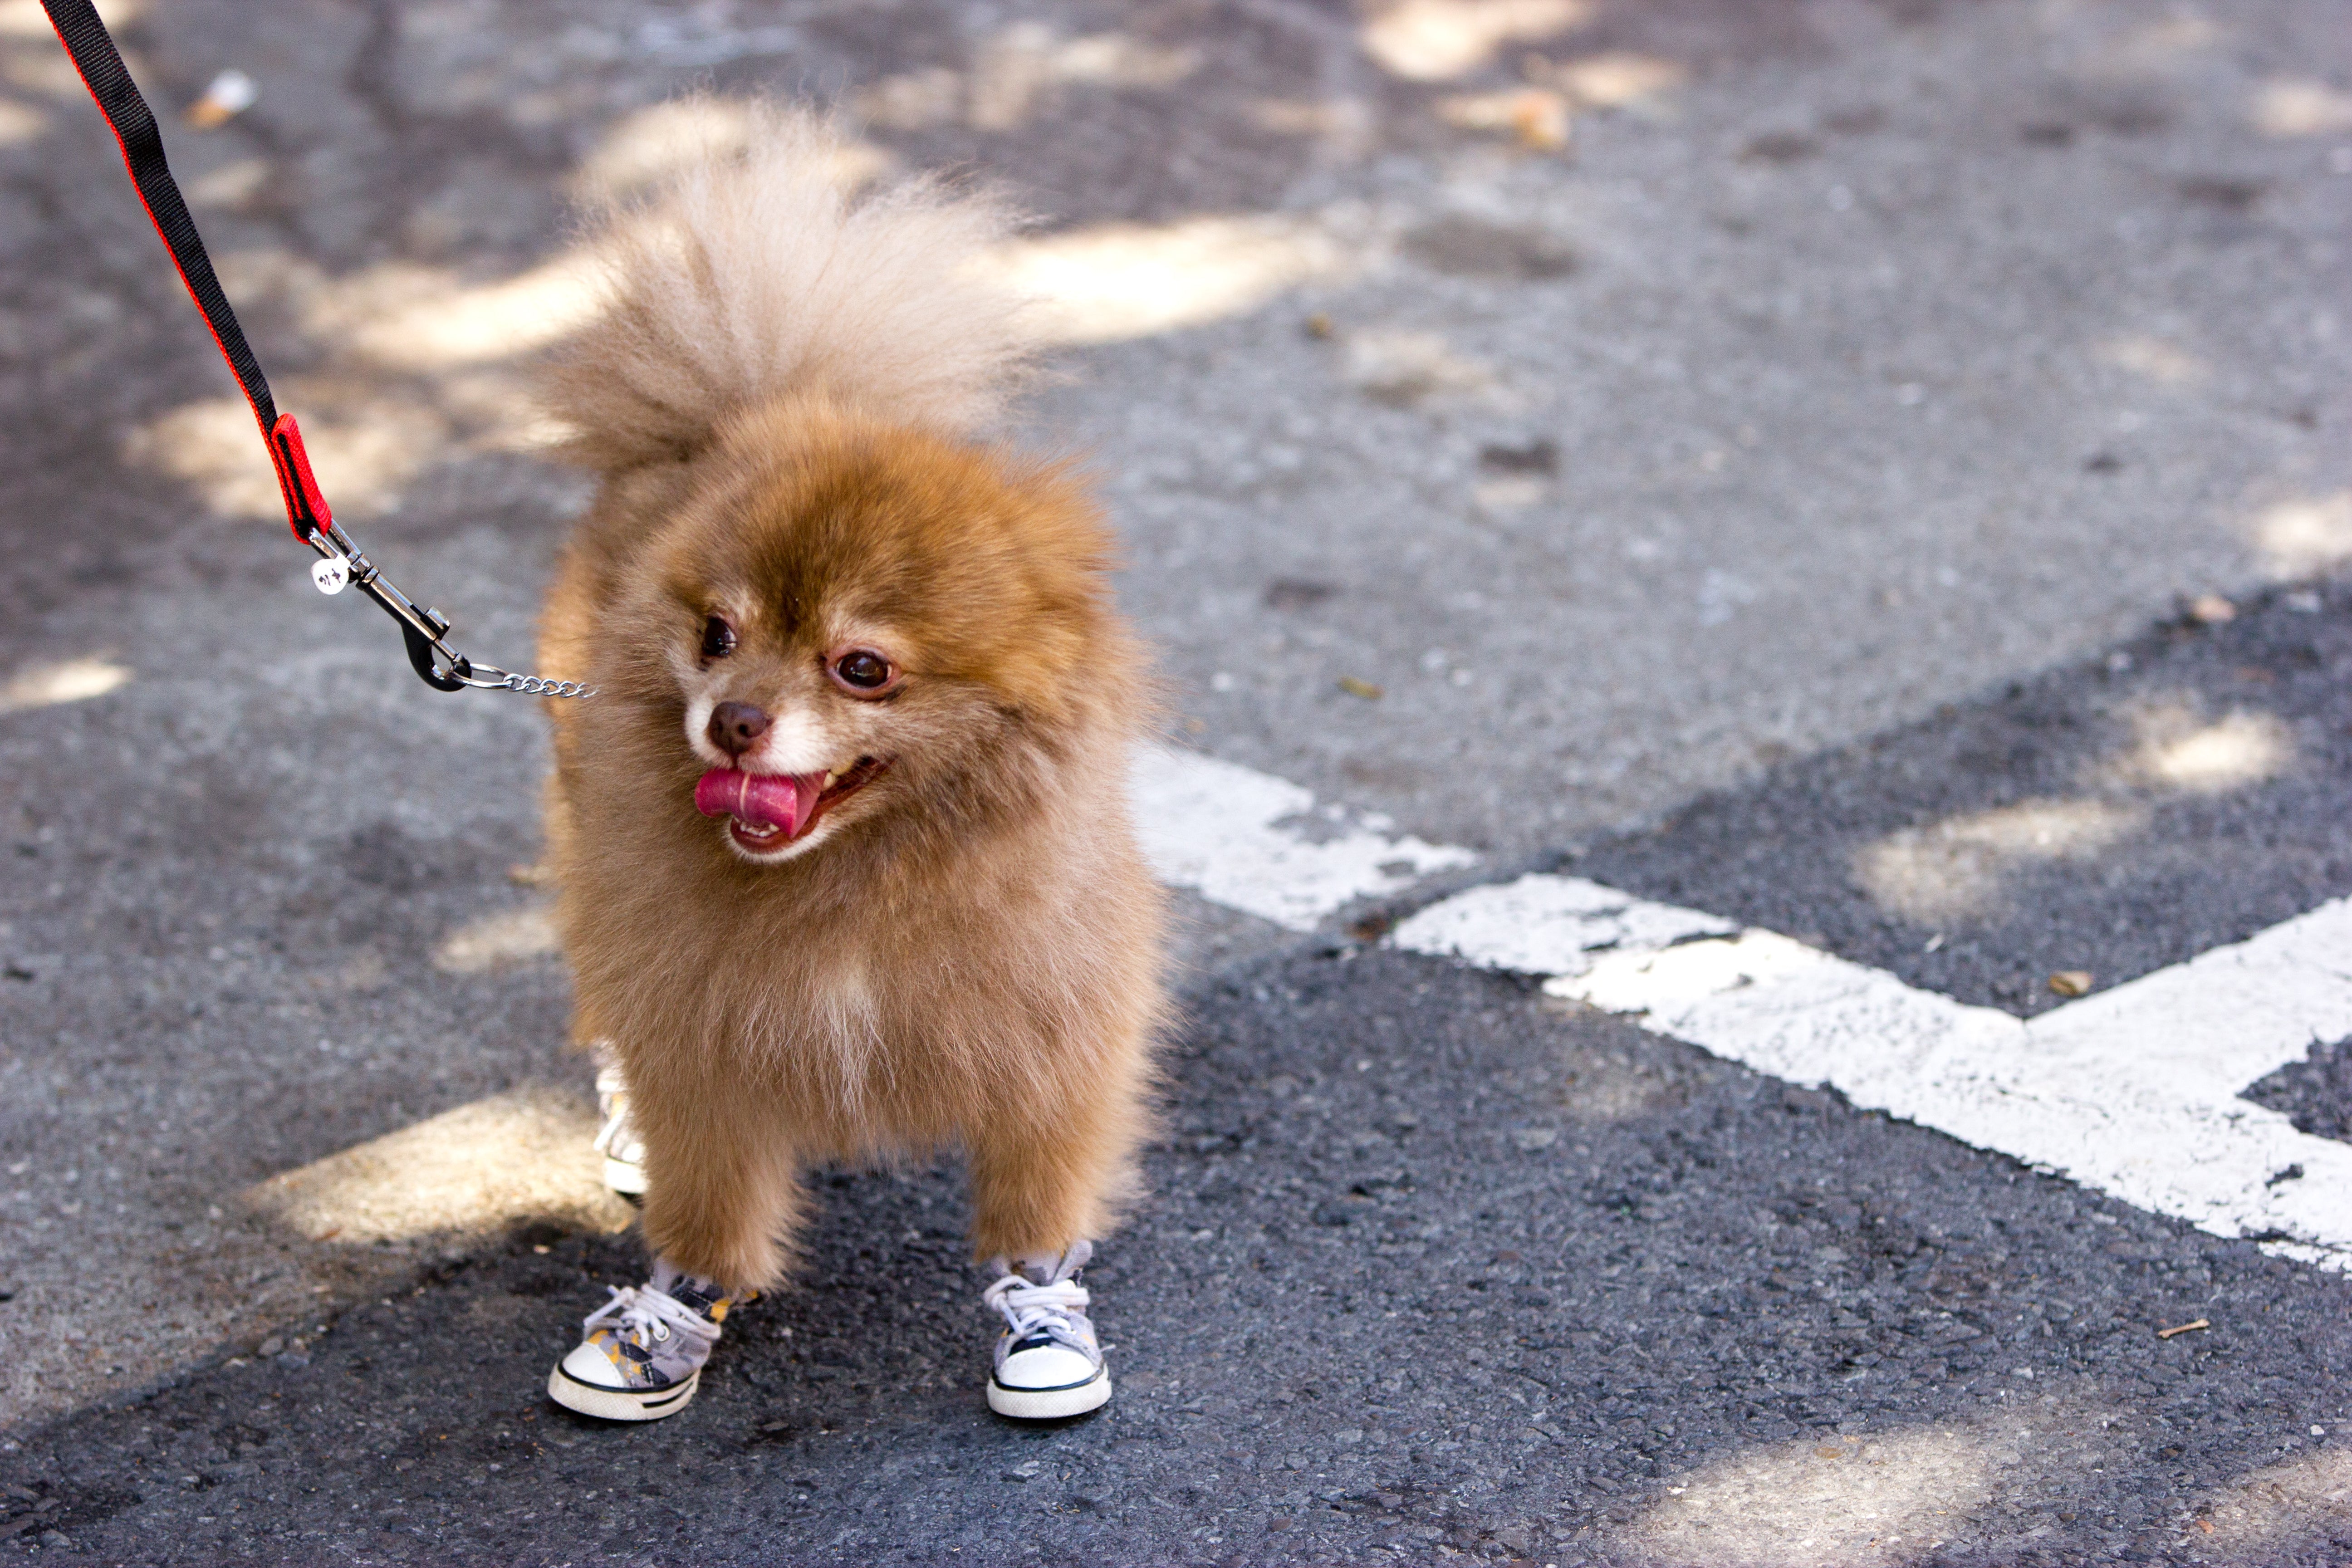 Dog shoes